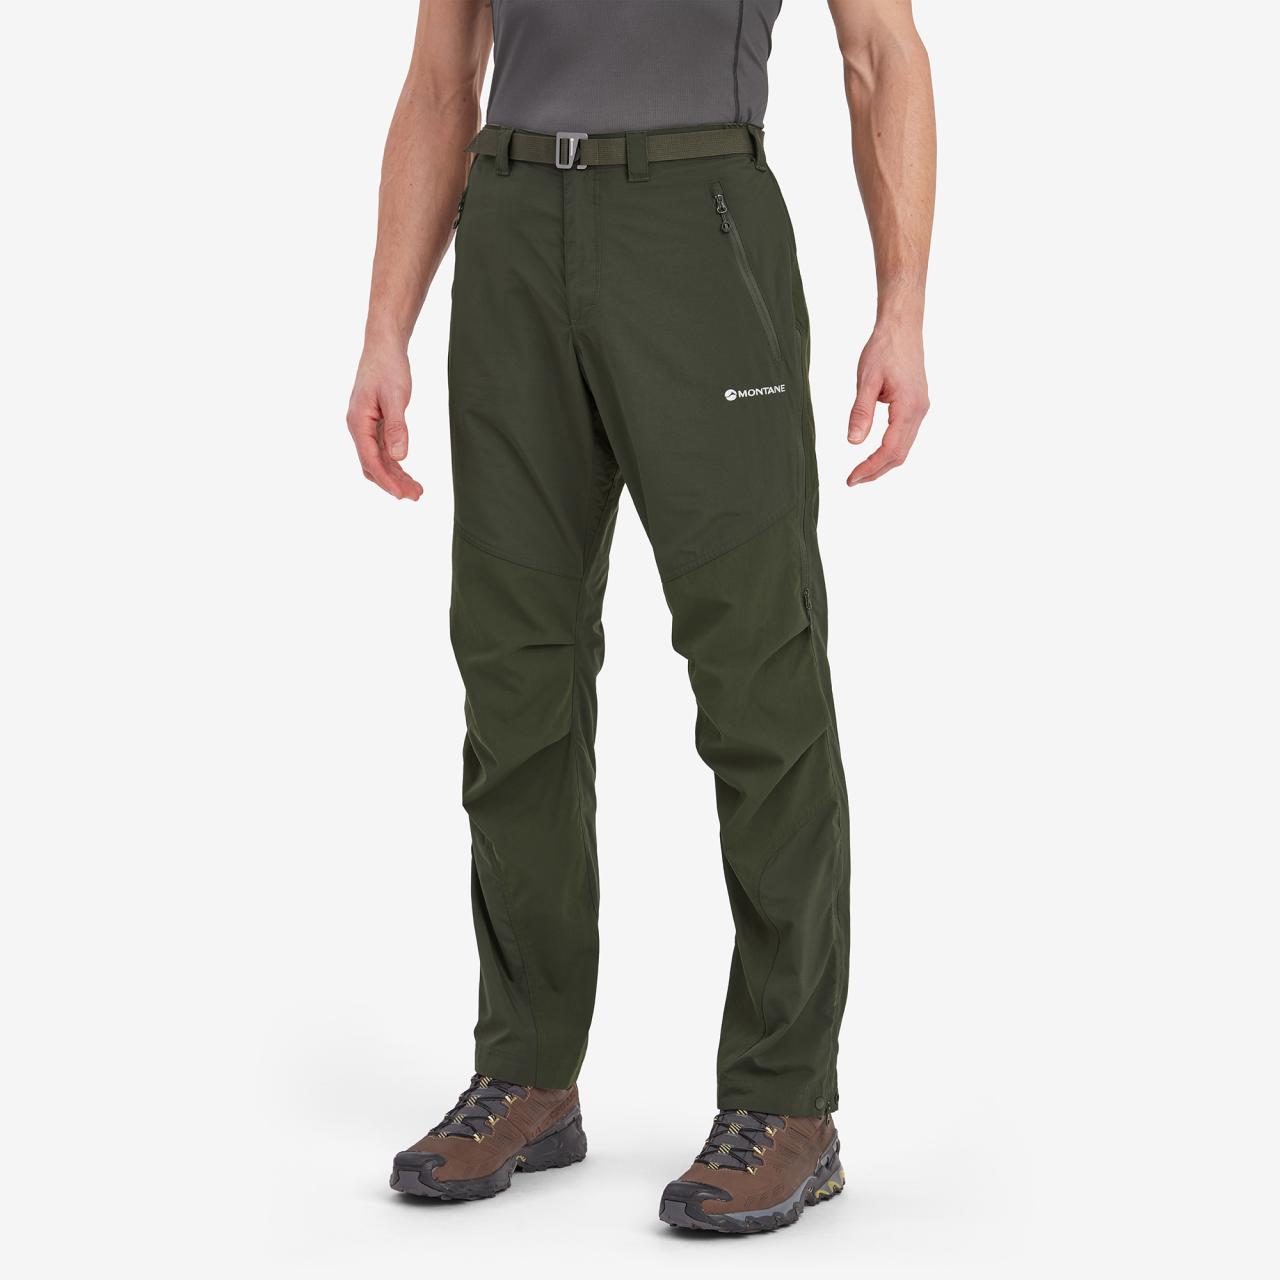 TERRA PANTS LONG LEG-OAK GREEN-32/M pánské kalhoty zelené